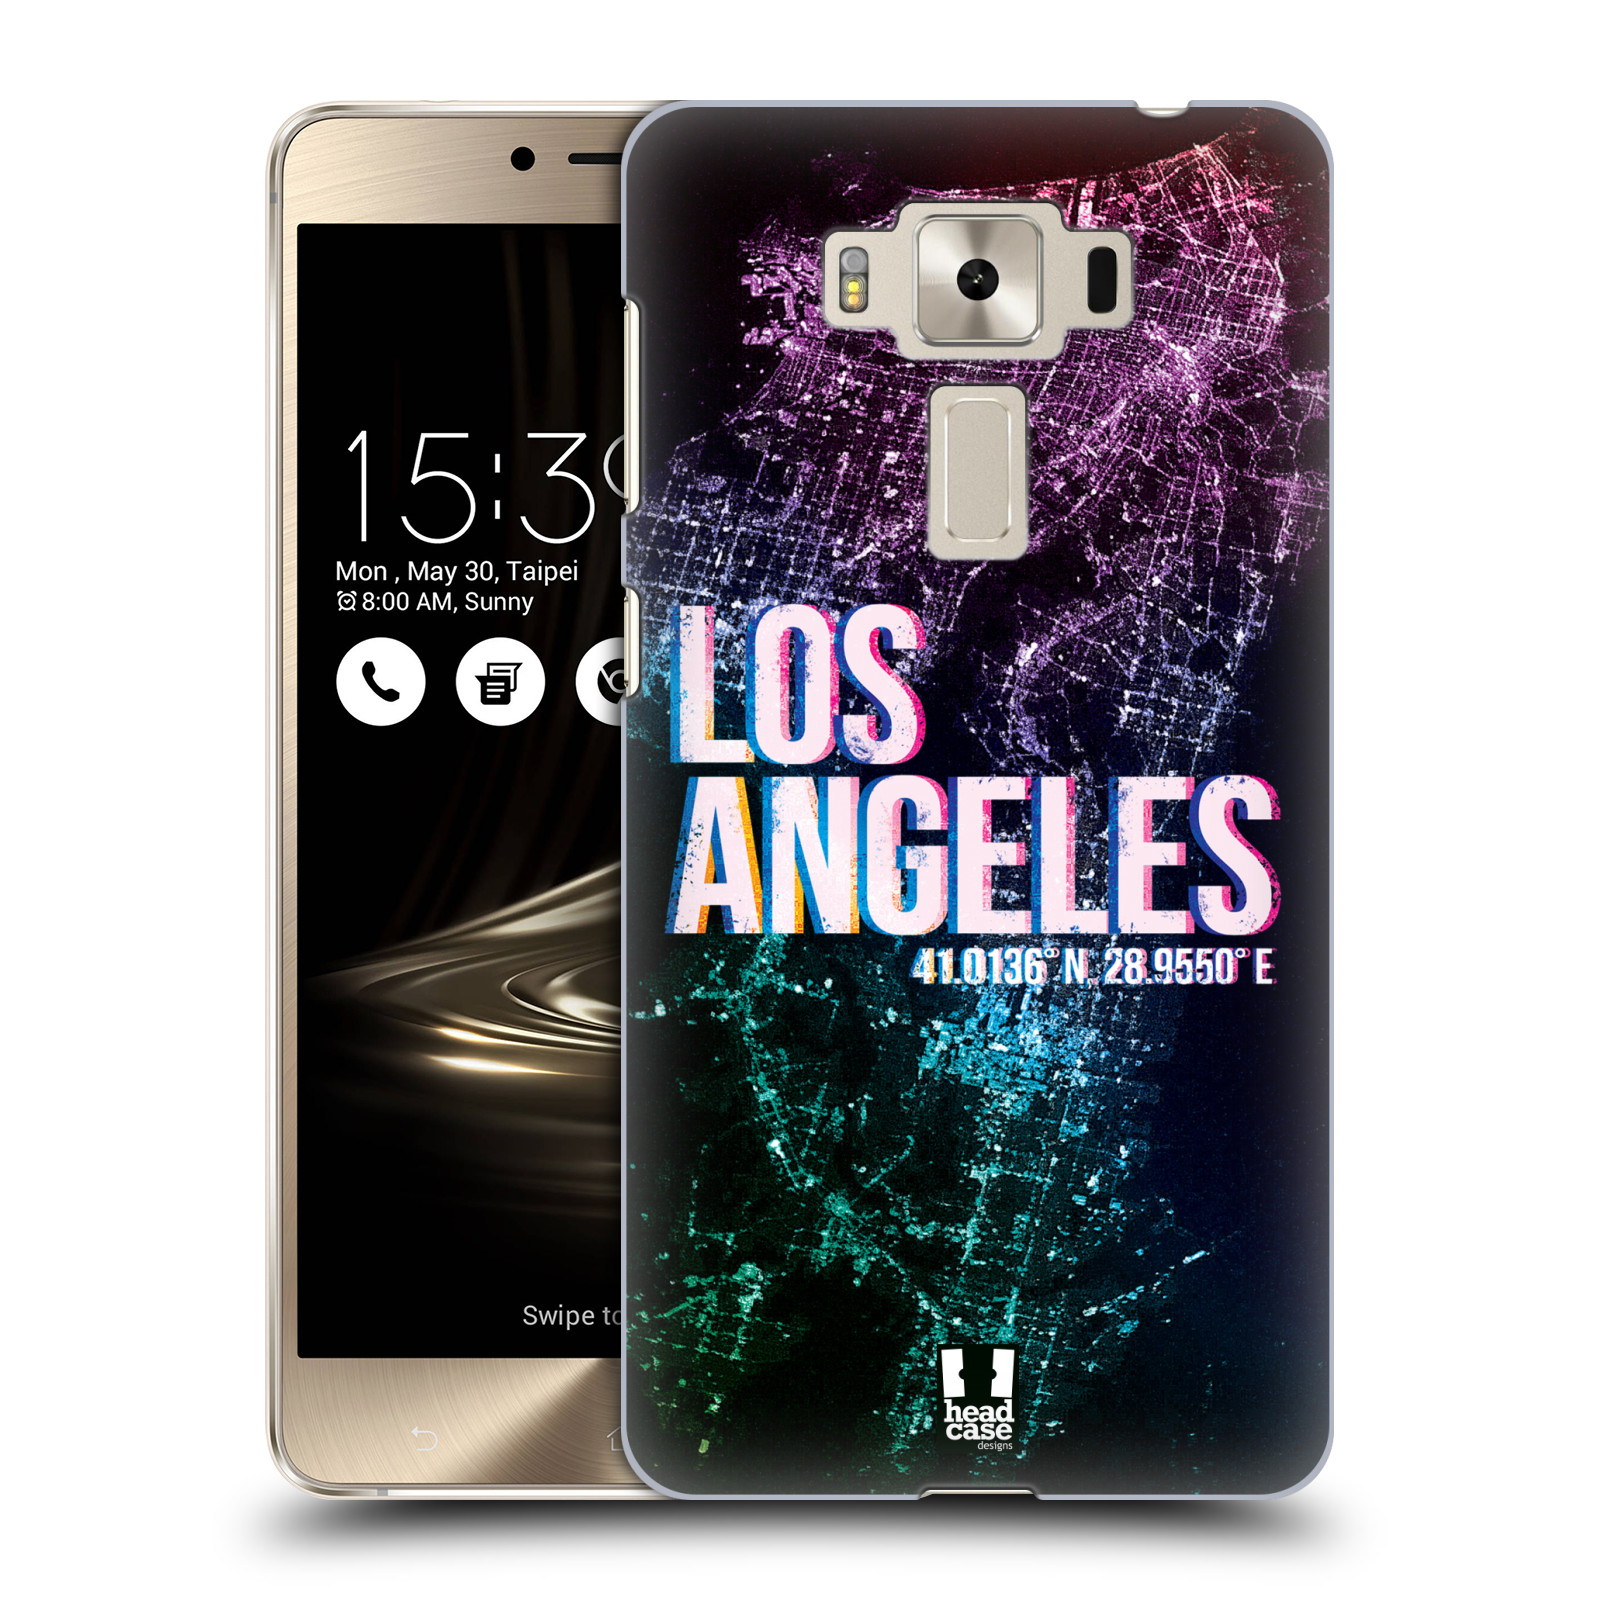 HEAD CASE plastový obal na mobil Asus Zenfone 3 DELUXE ZS550KL vzor Světla známých měst, Satelitní snímky fialová USA, LOS ANGELES